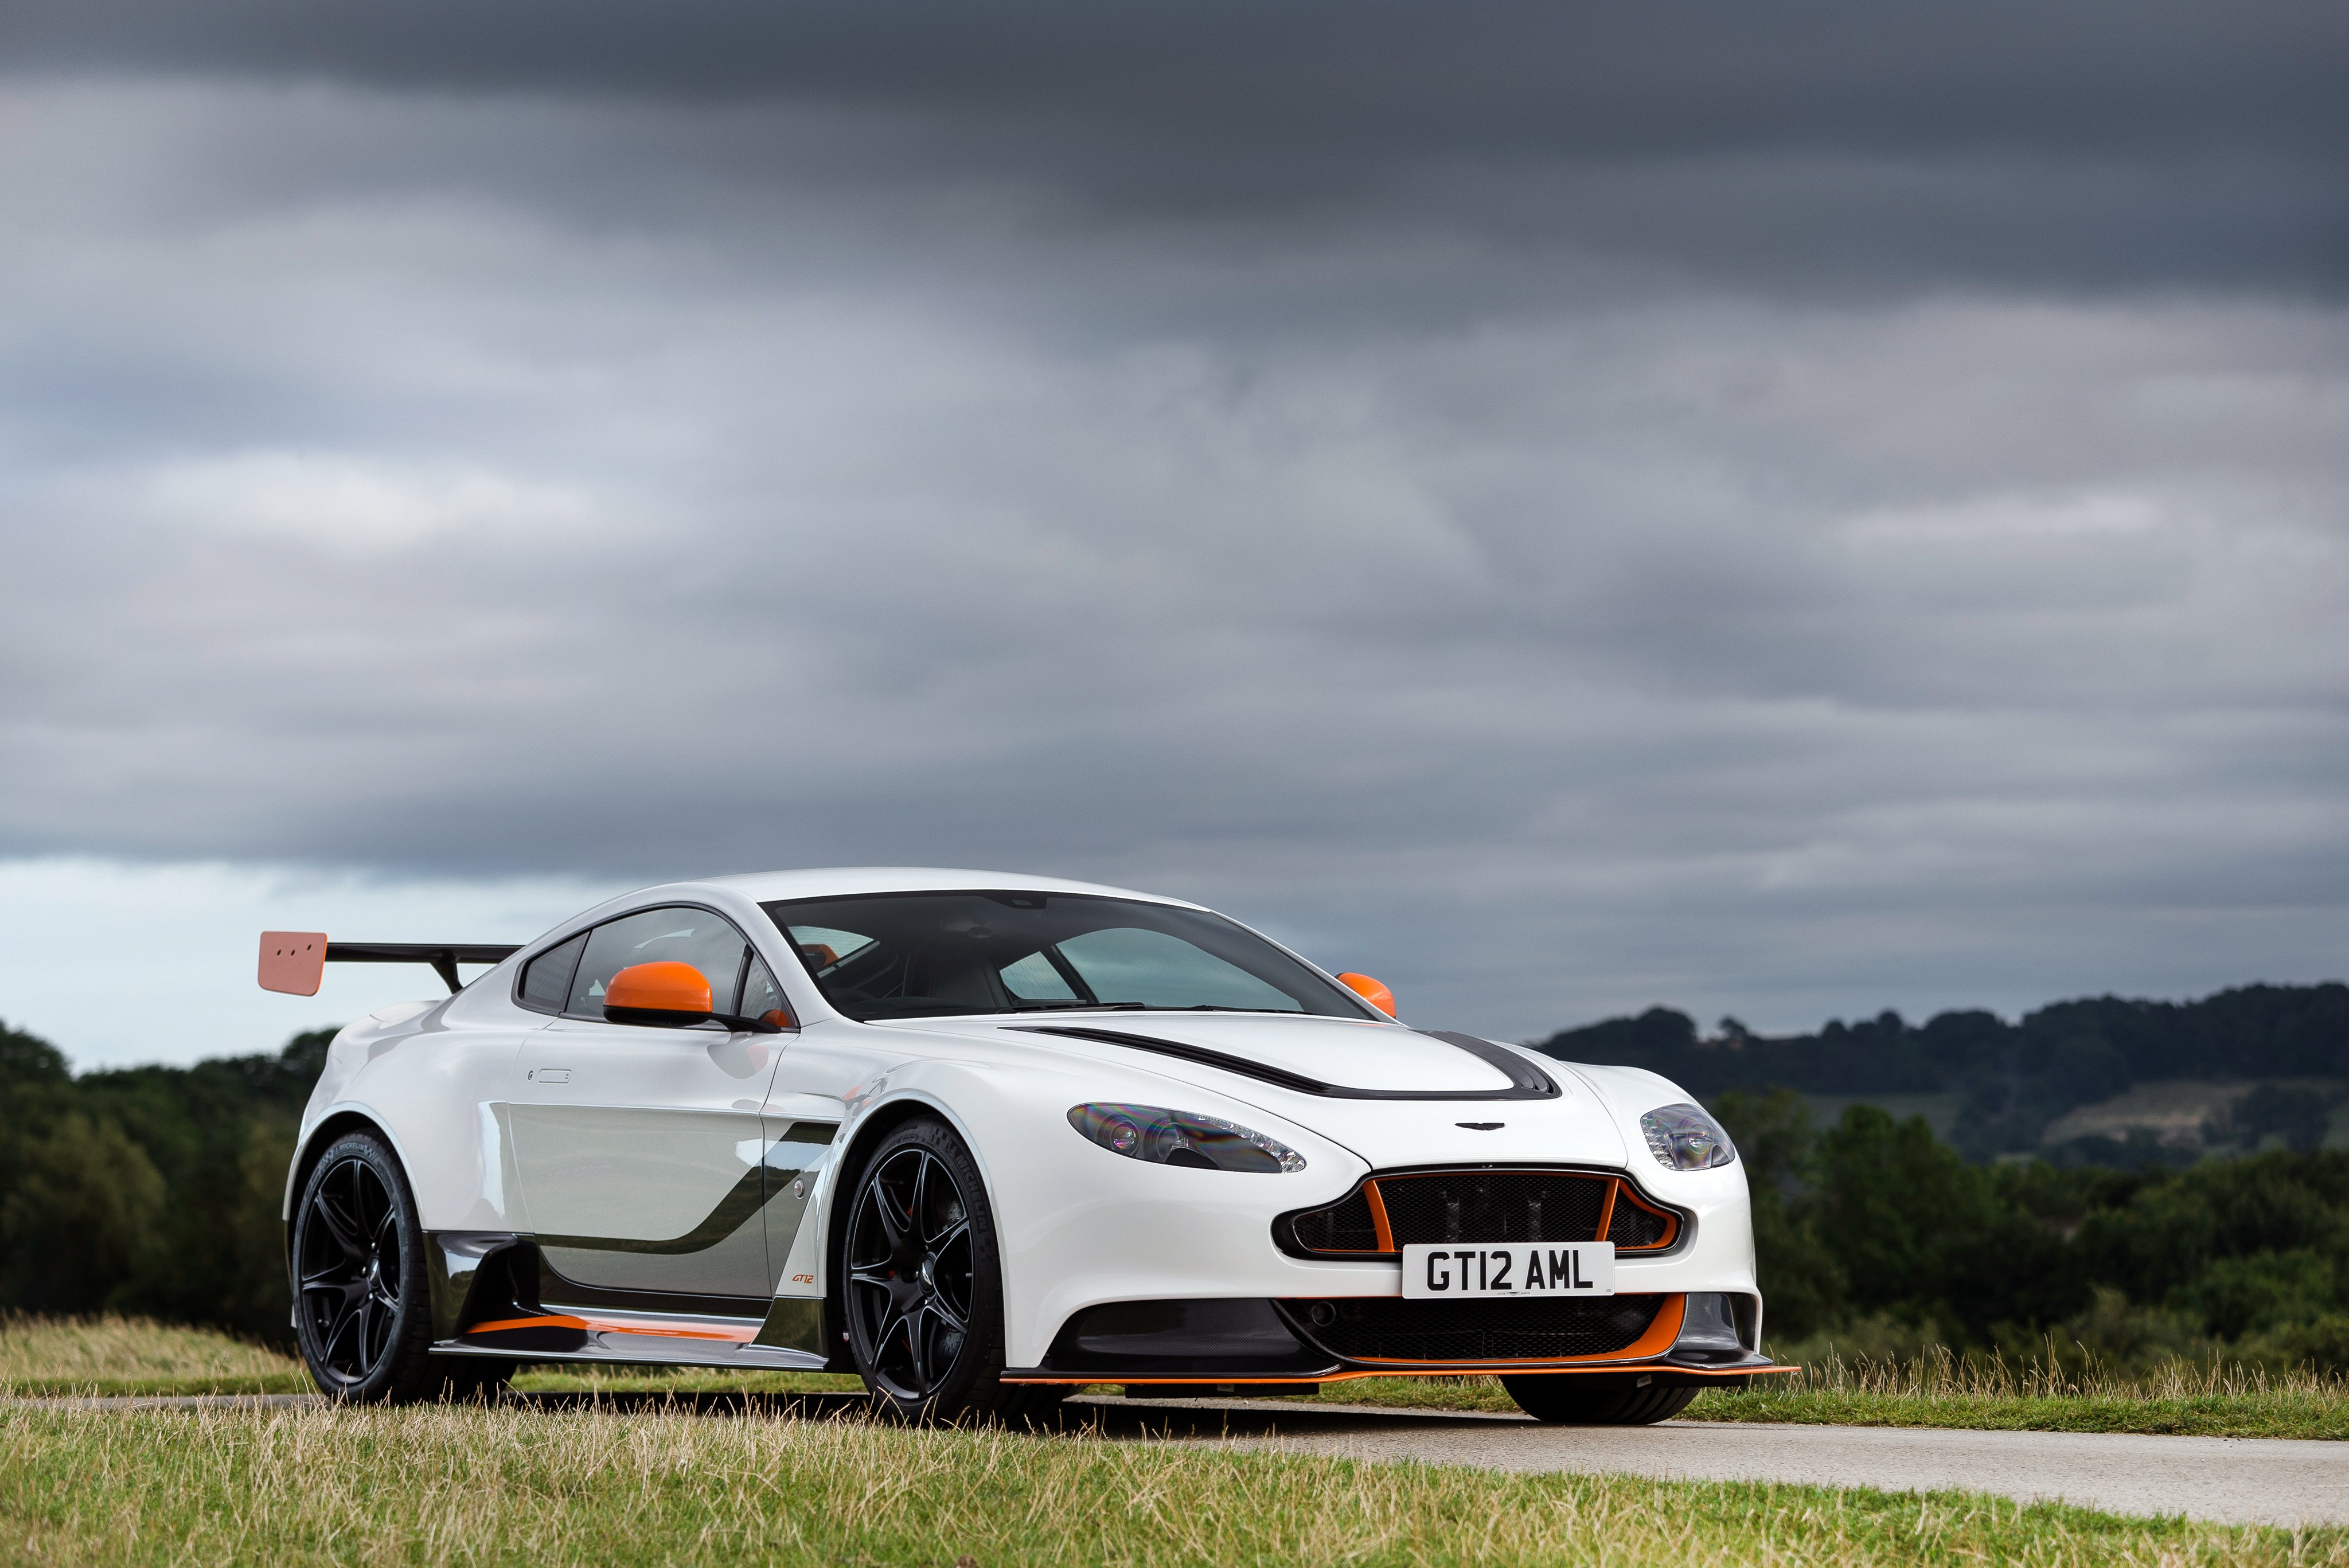 2015, Aston, Martin, V12, Vantage, Gt12, Uk spec, Supercar Wallpaper